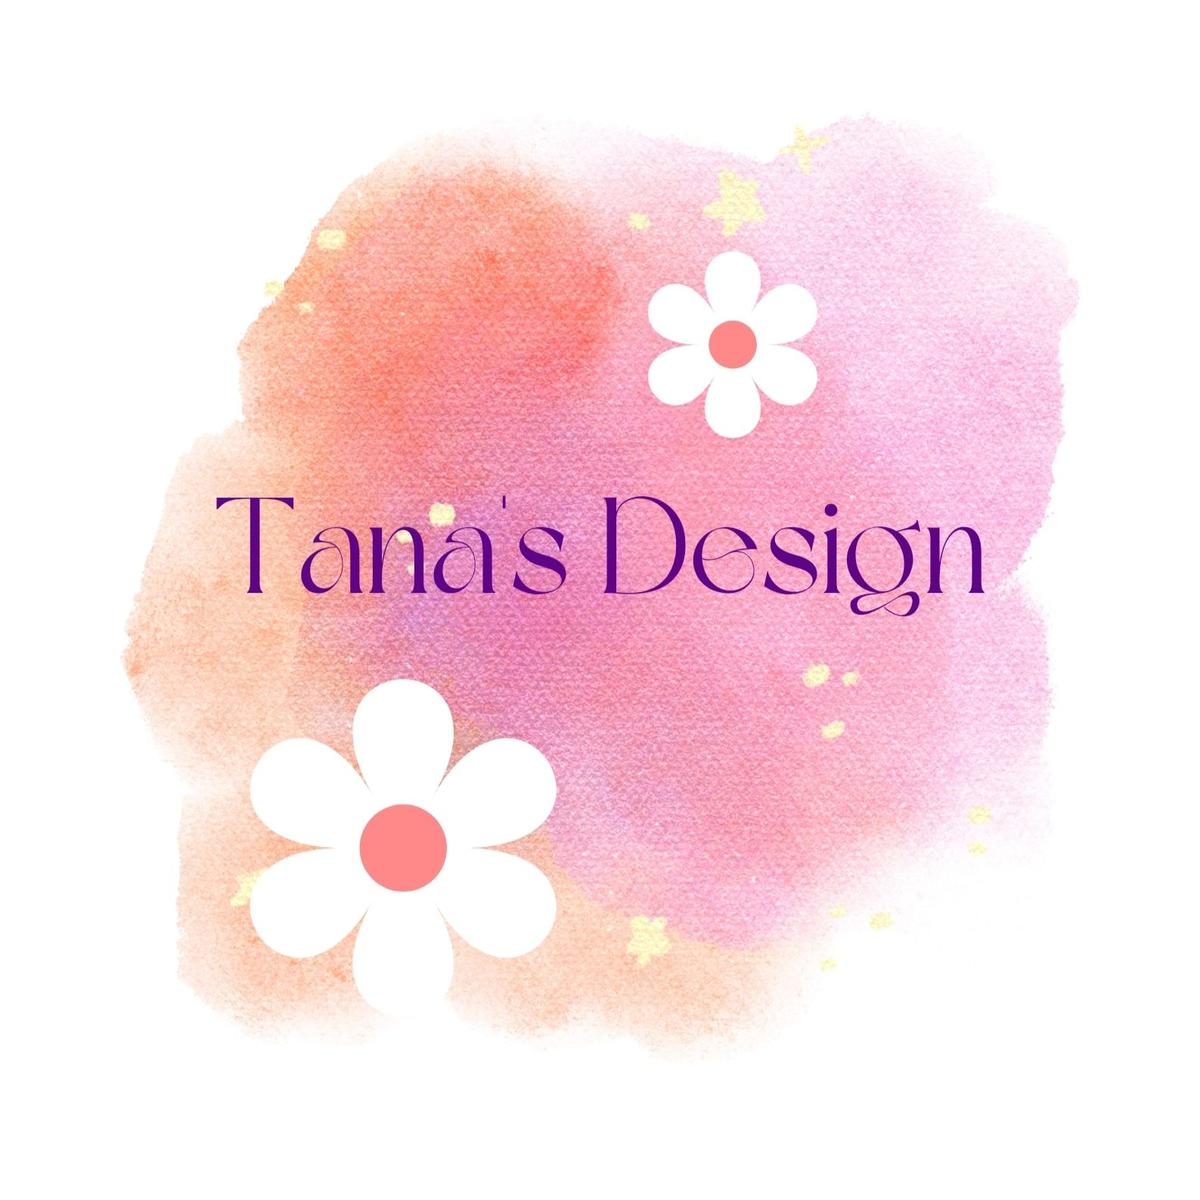 Tana's Design's images